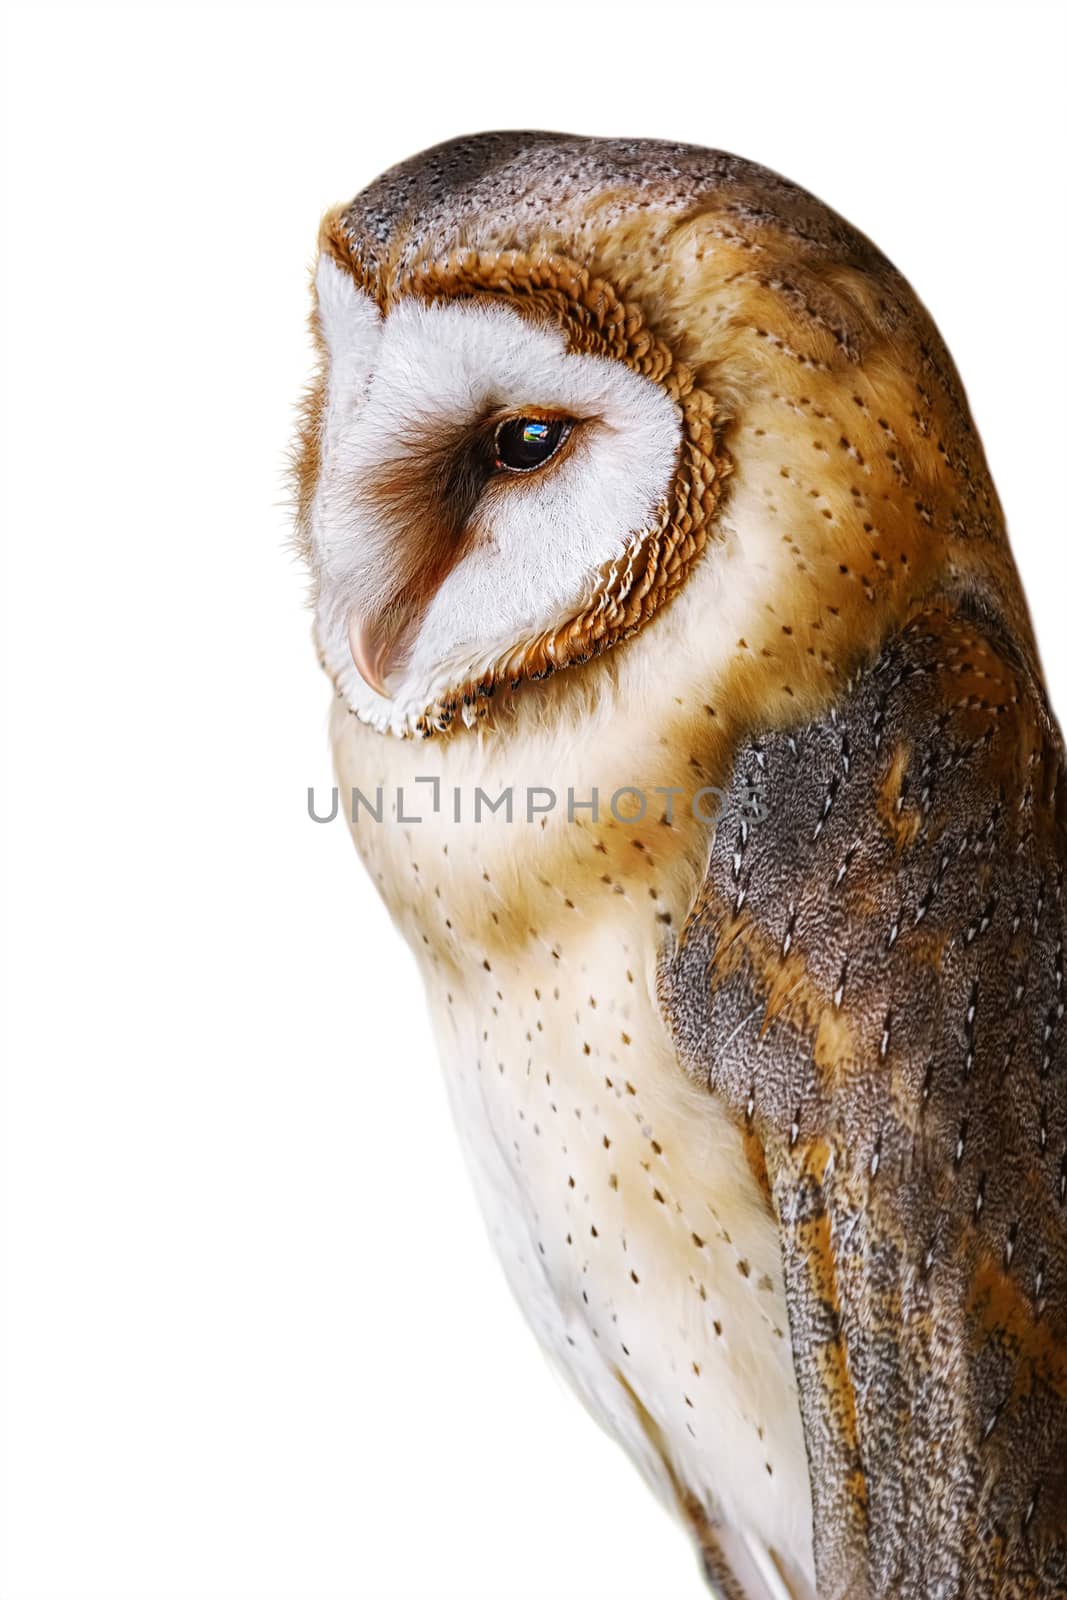 Common barn owl (Tyto alba) by SNR